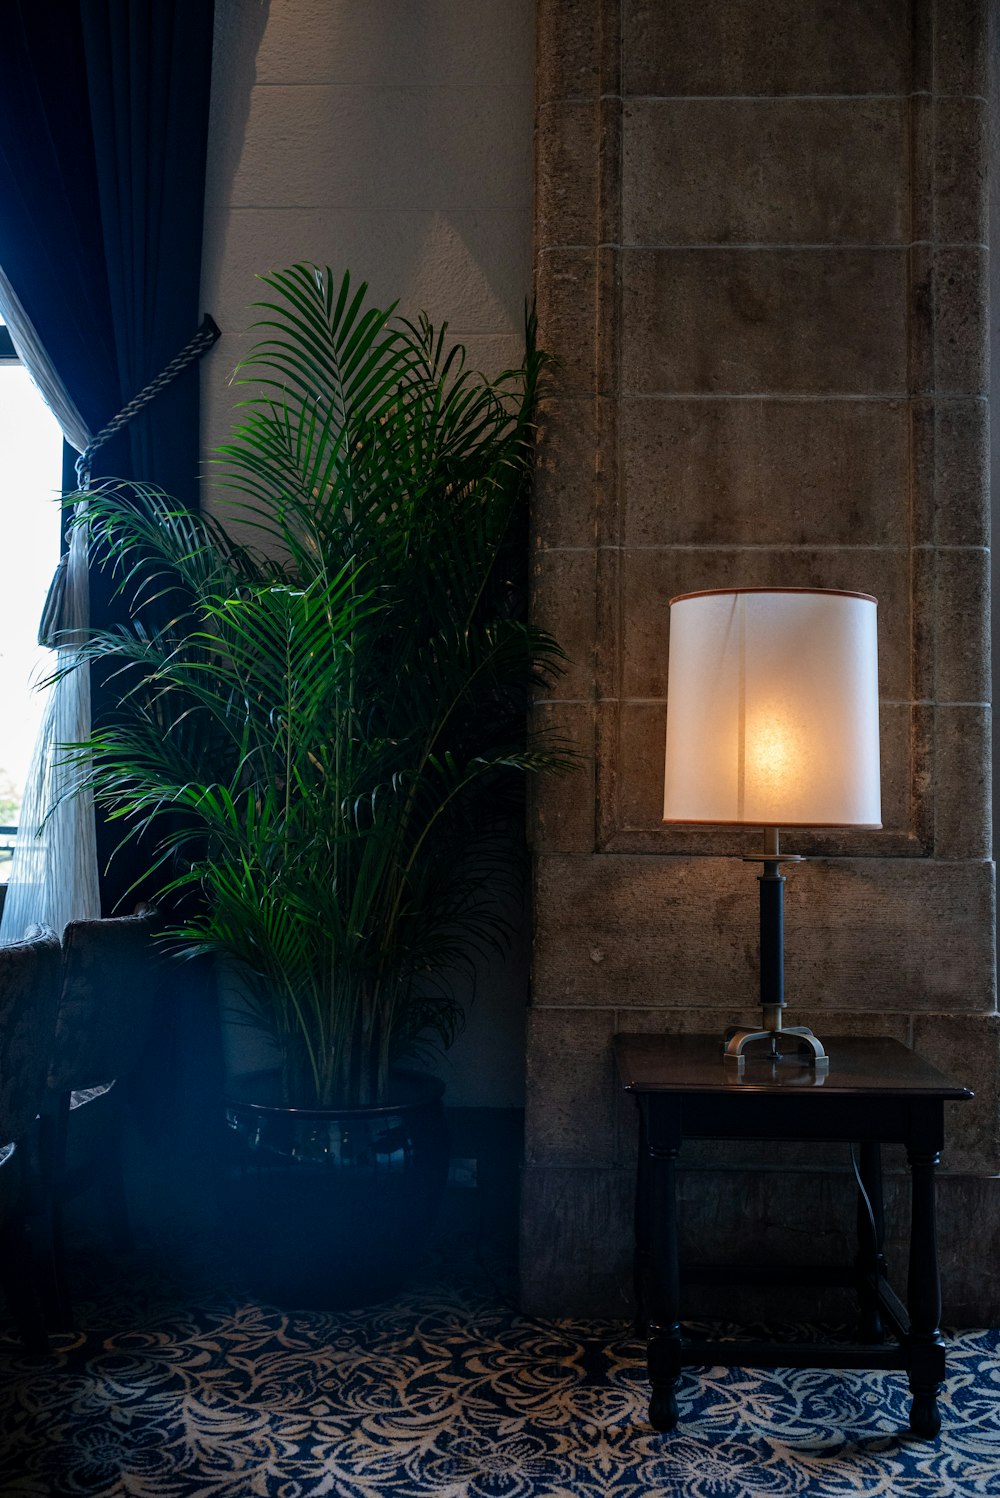 una lámpara que está sobre una mesa junto a una planta en maceta